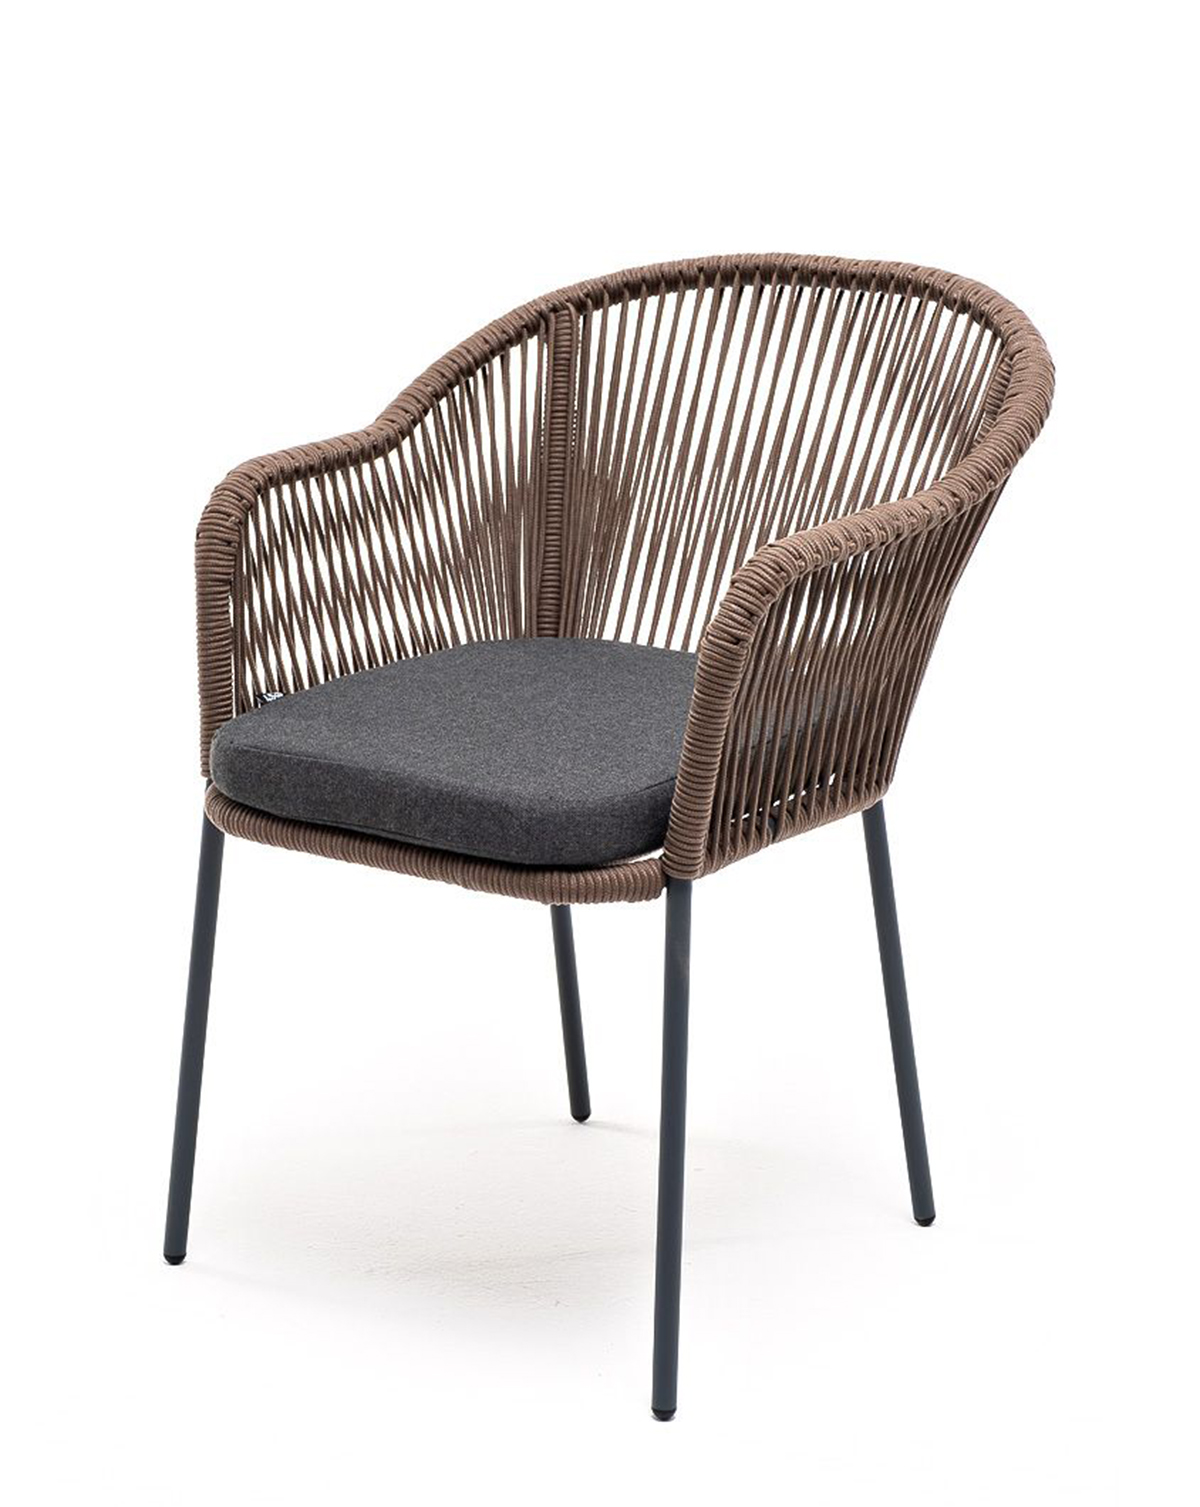 Плетеный стул из роупа Лион серо-коричневый плетеный стул из роупа диего серо коричневый